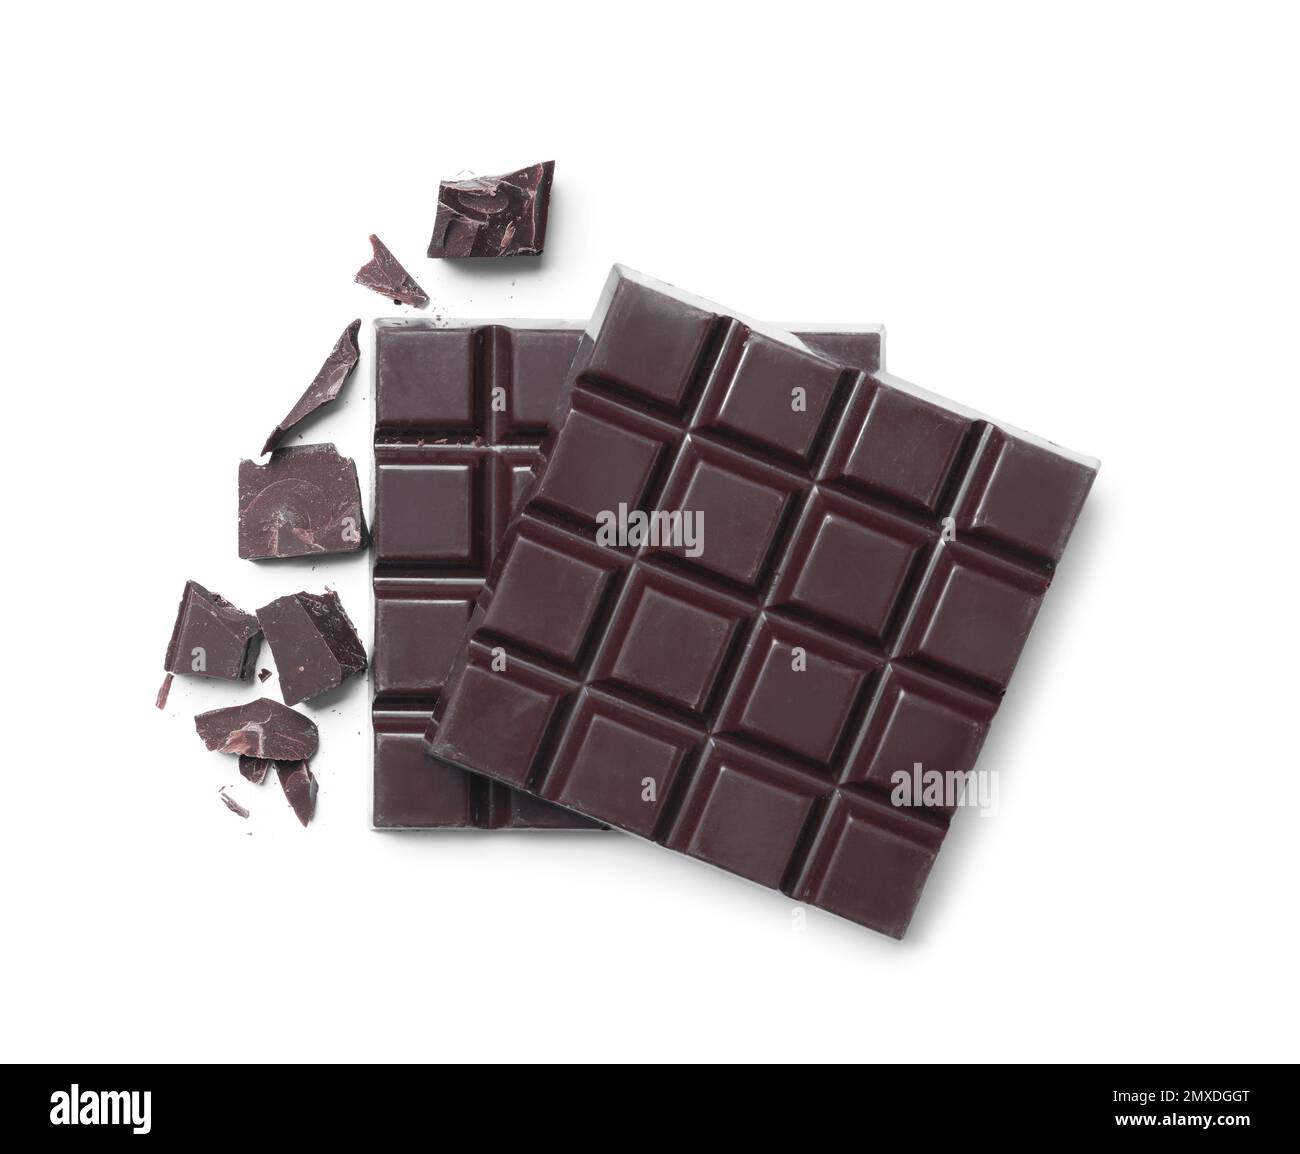 Köstliche dunkle Schokolade isoliert auf Weiß, Blick von oben  Stockfotografie - Alamy